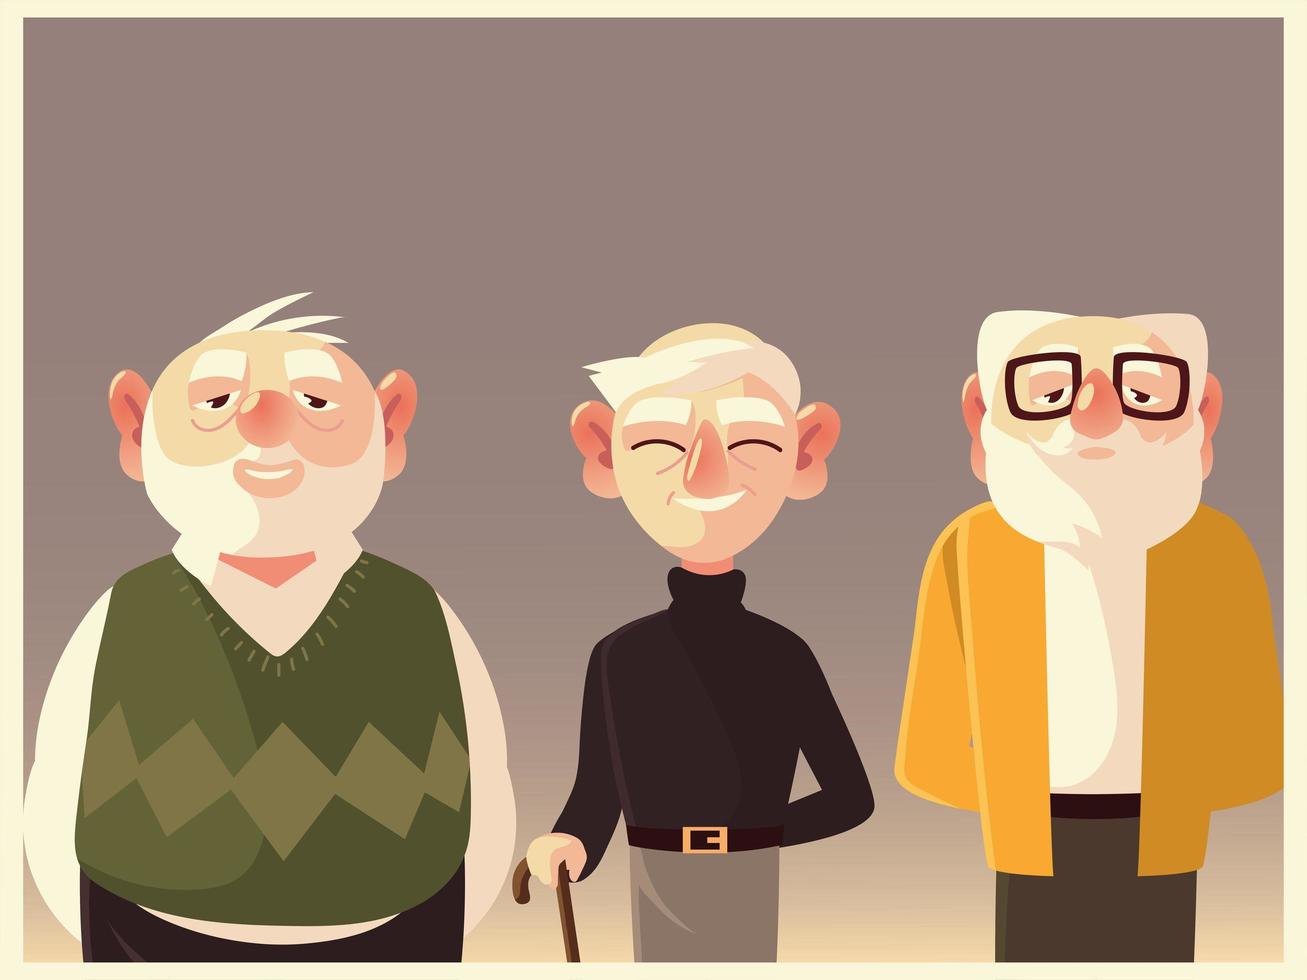 süße ältere Großeltern Männer Zeichentrickfiguren männlich vektor